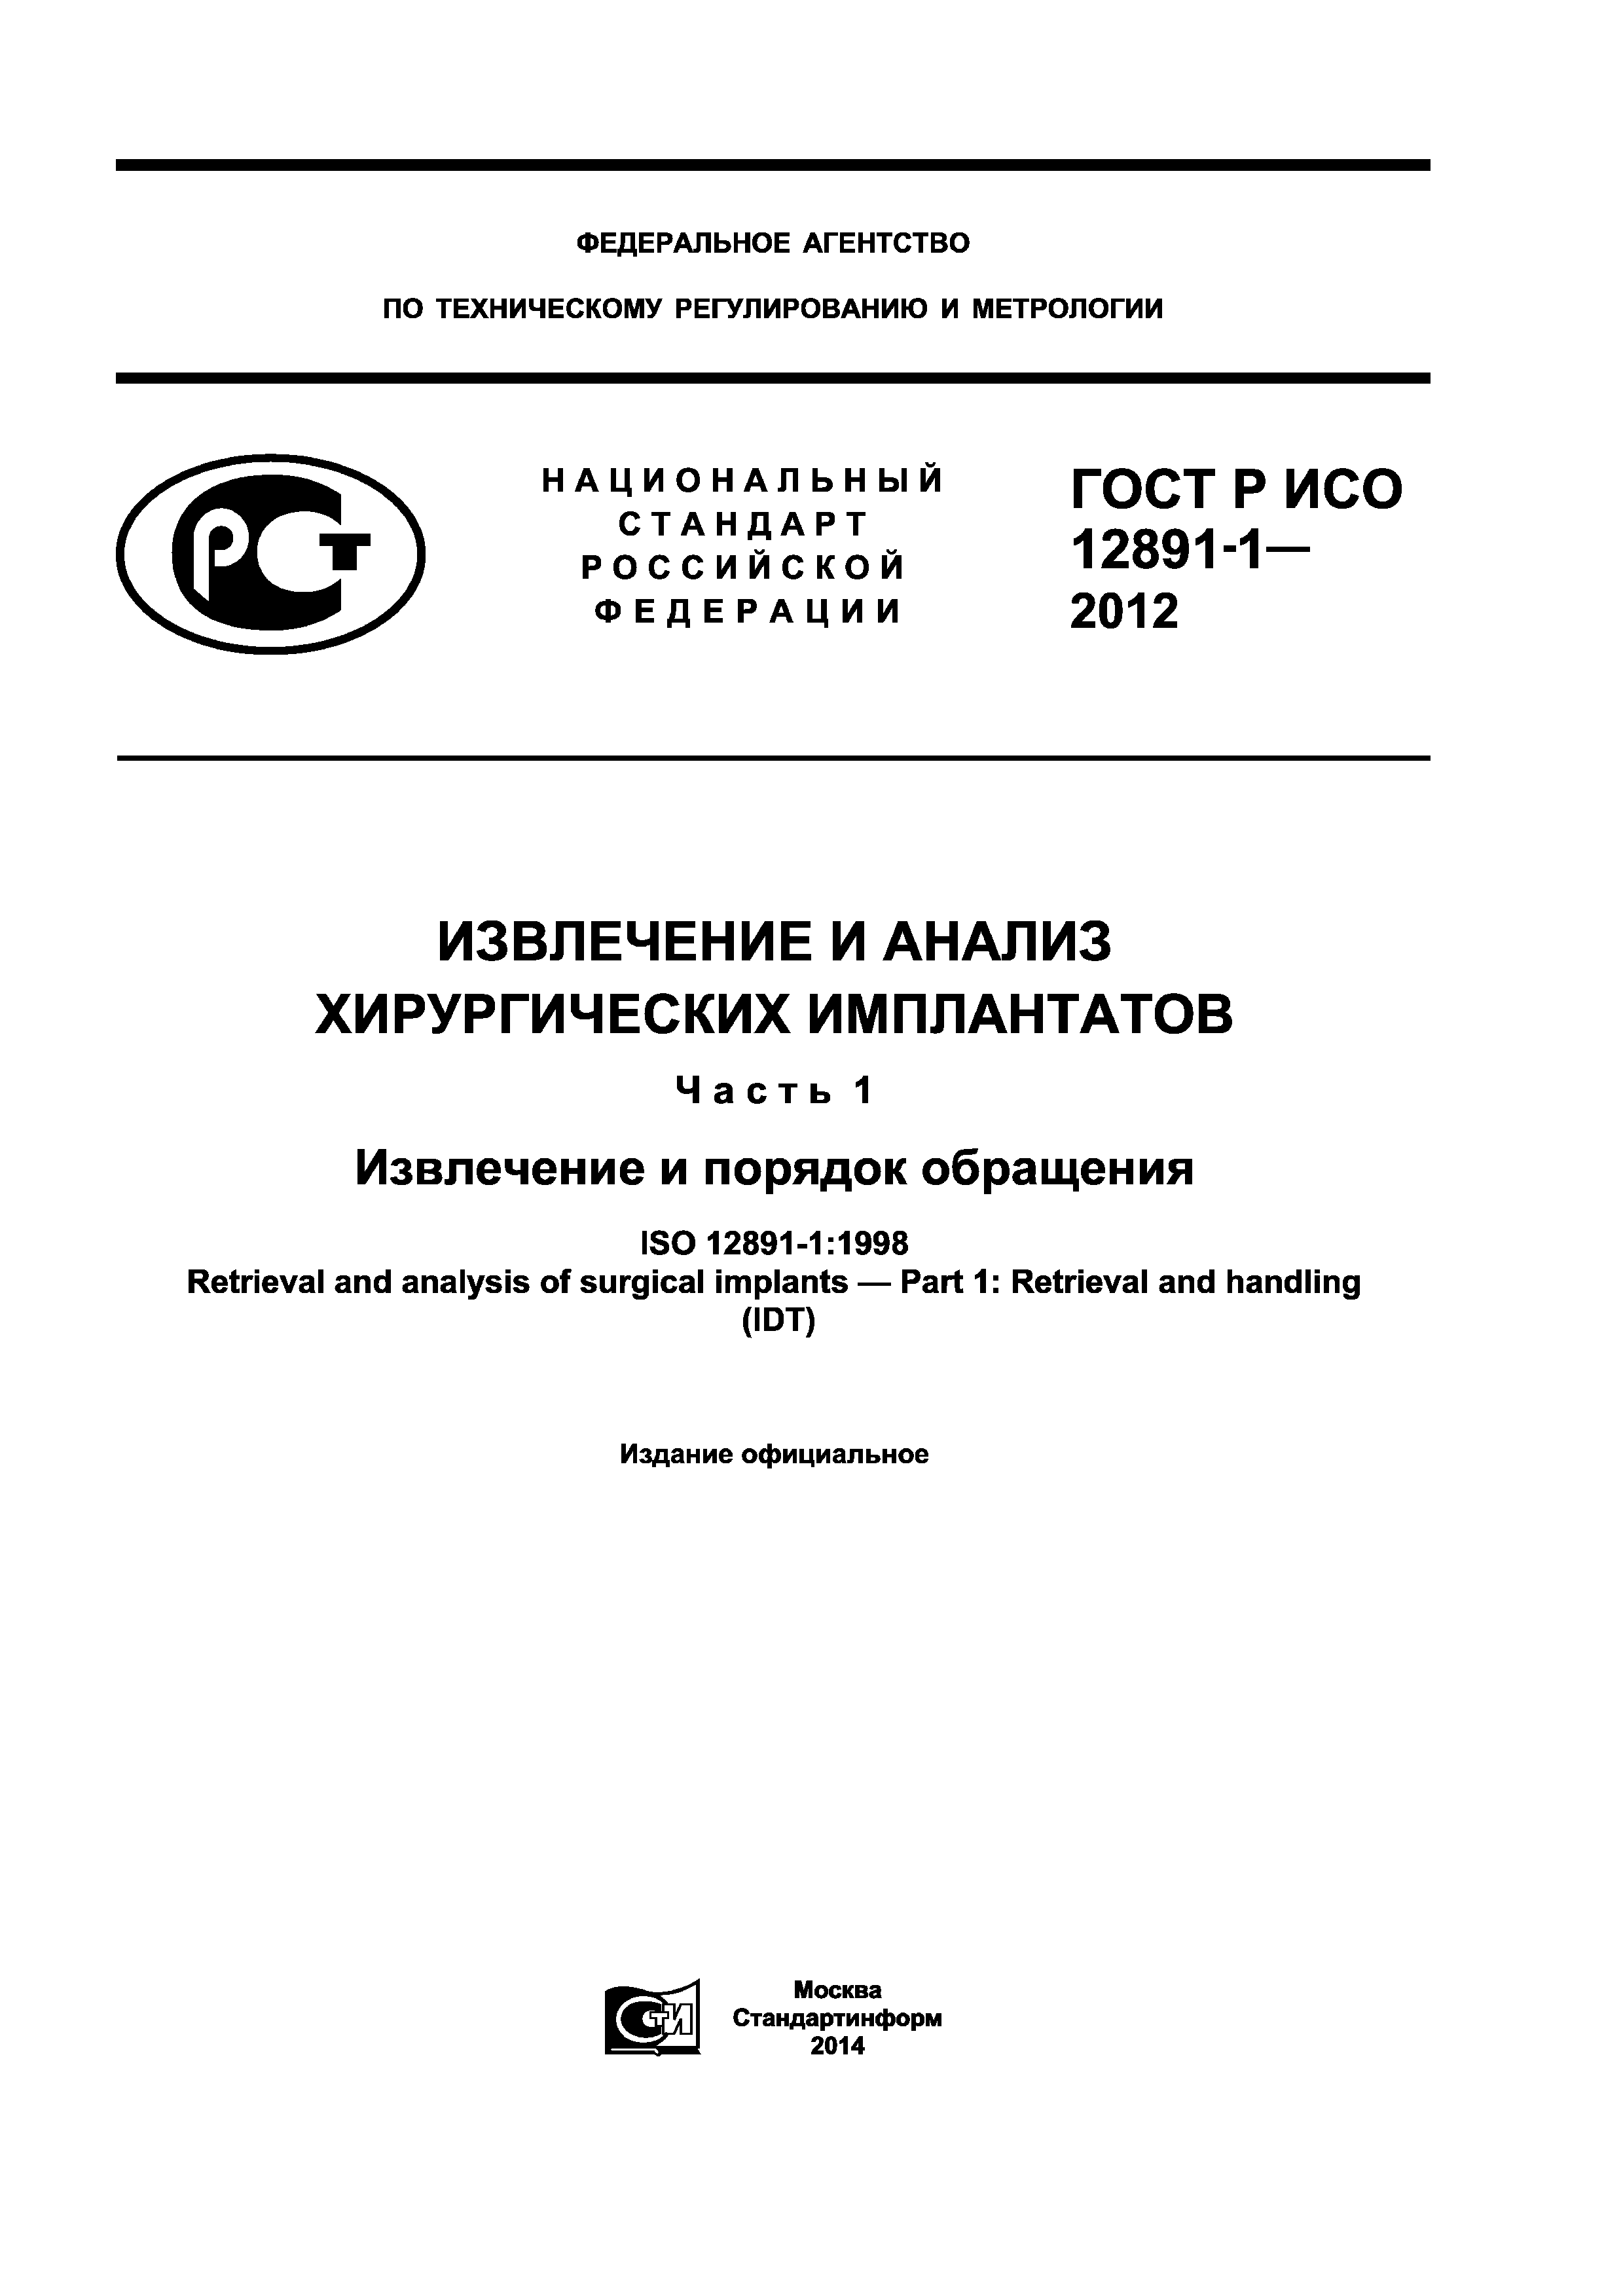 ГОСТ Р ИСО 12891-1-2012